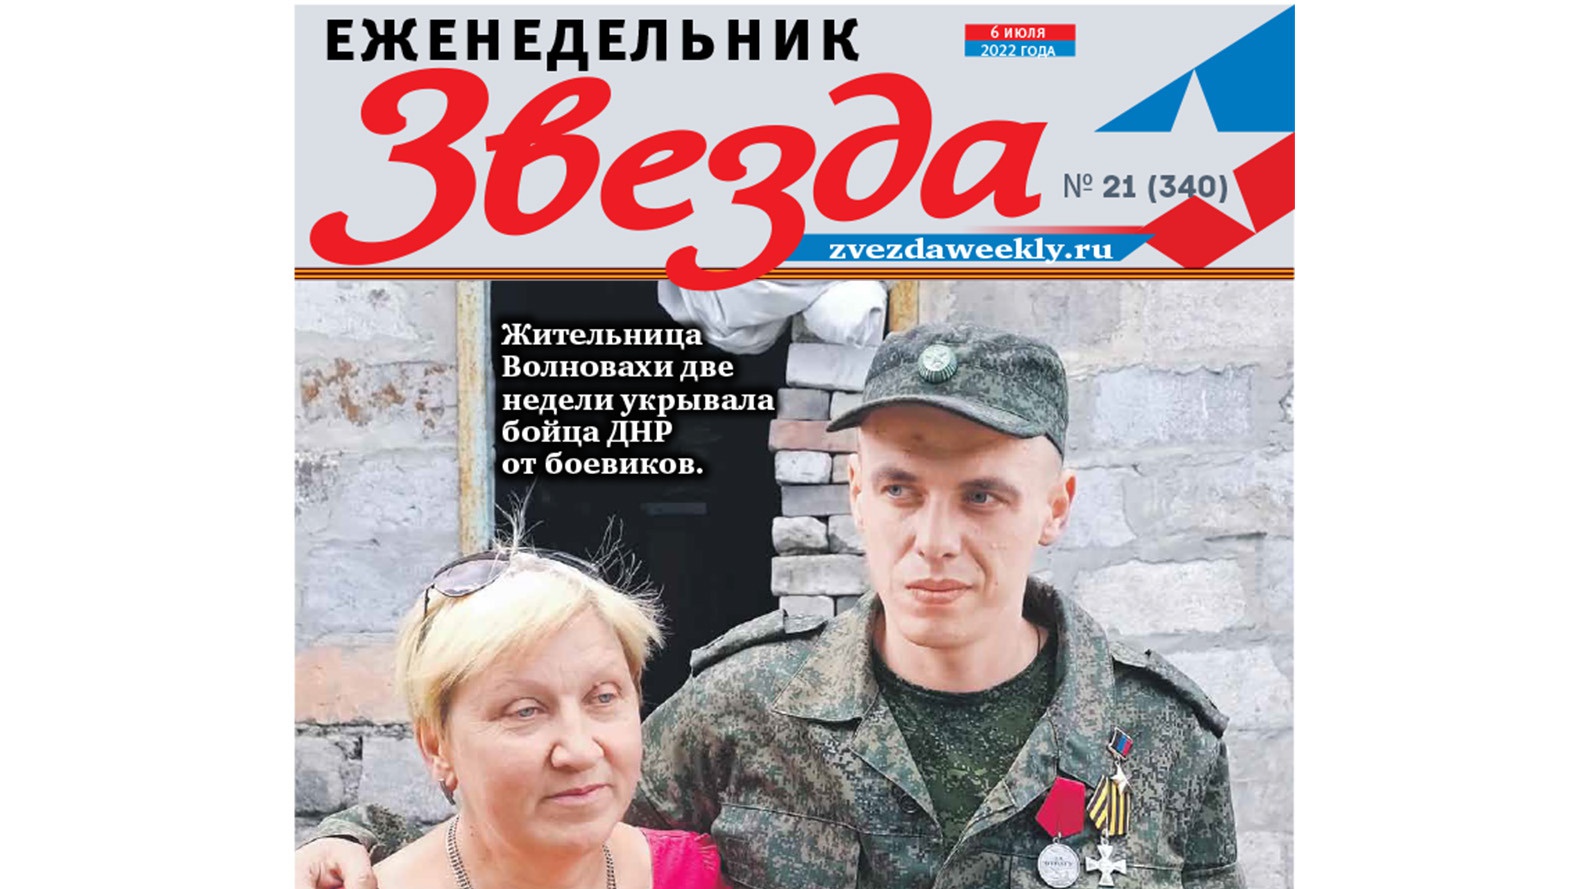 Еженедельник «Звезда». Спасти младшего сержанта Донченко